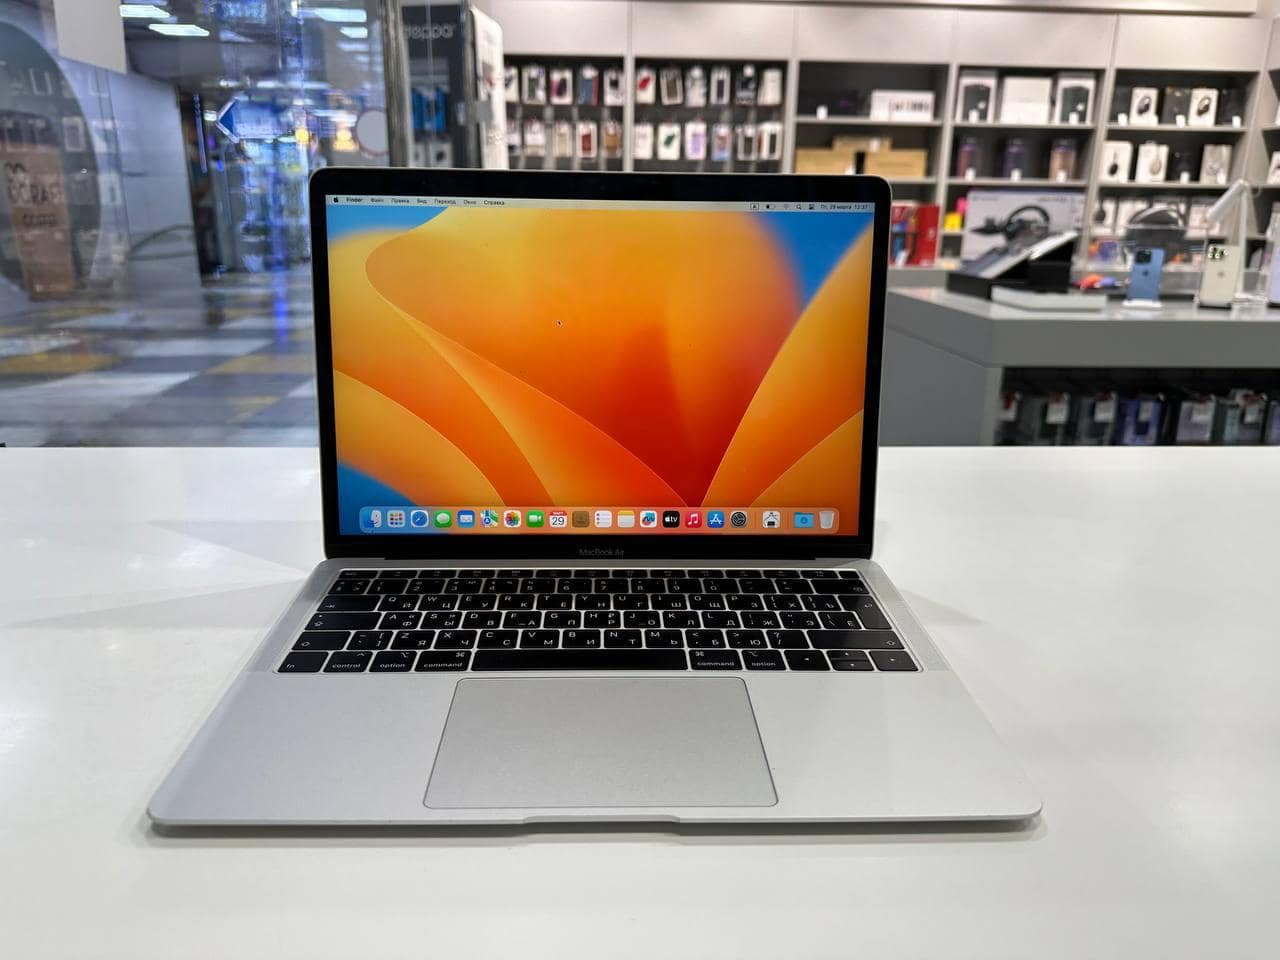 MacBook Air 13" (Mid 2019) Silver MVFK2RU/A Core i5 1,6 GHz/8Gb/128Gb SSD/Touch ID 476 цикла - БУ